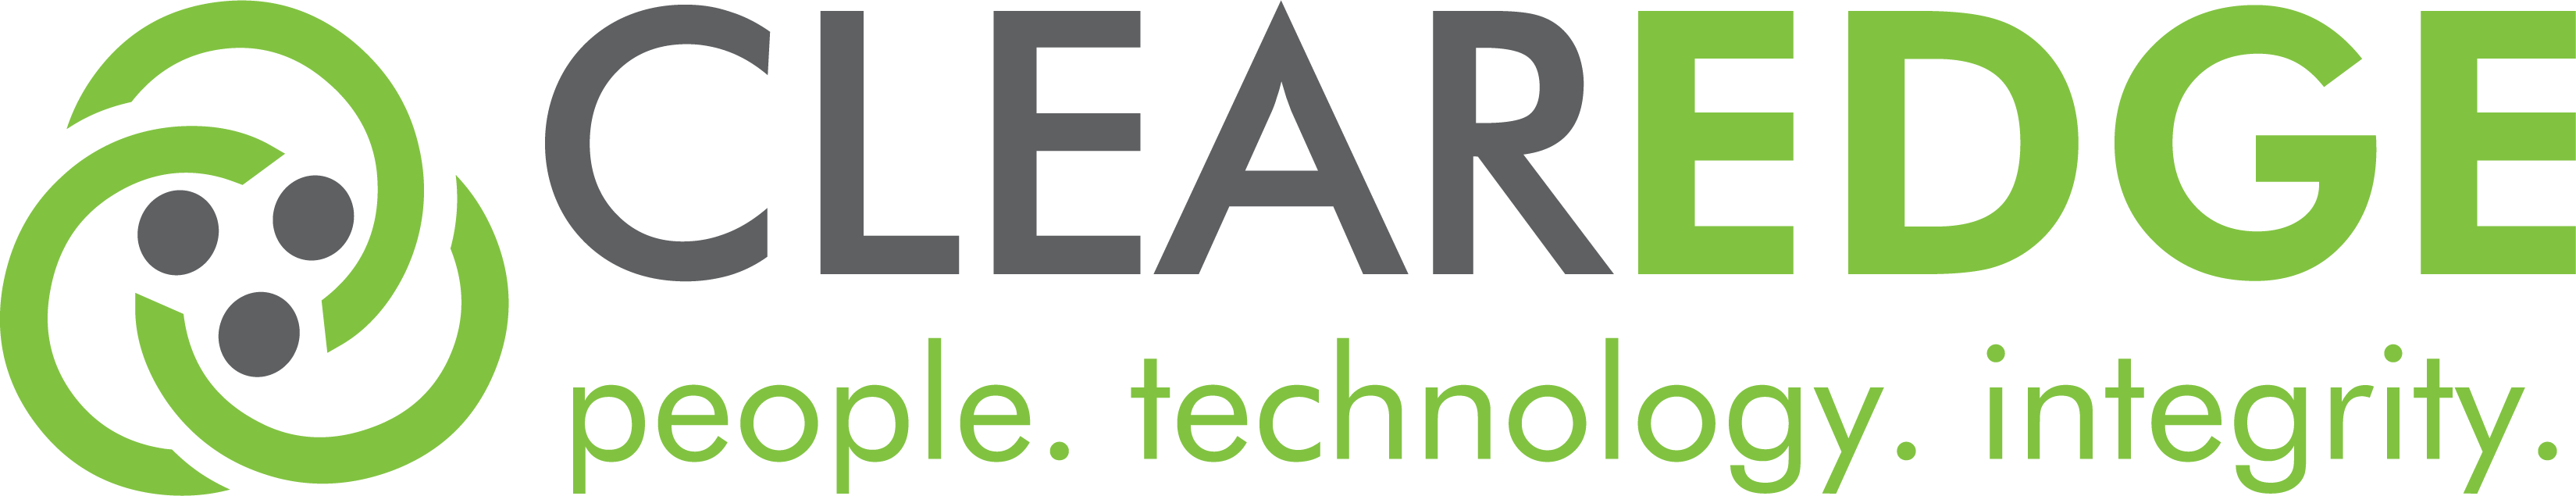 ClearEdge IT Solutions, LLC Company Logo